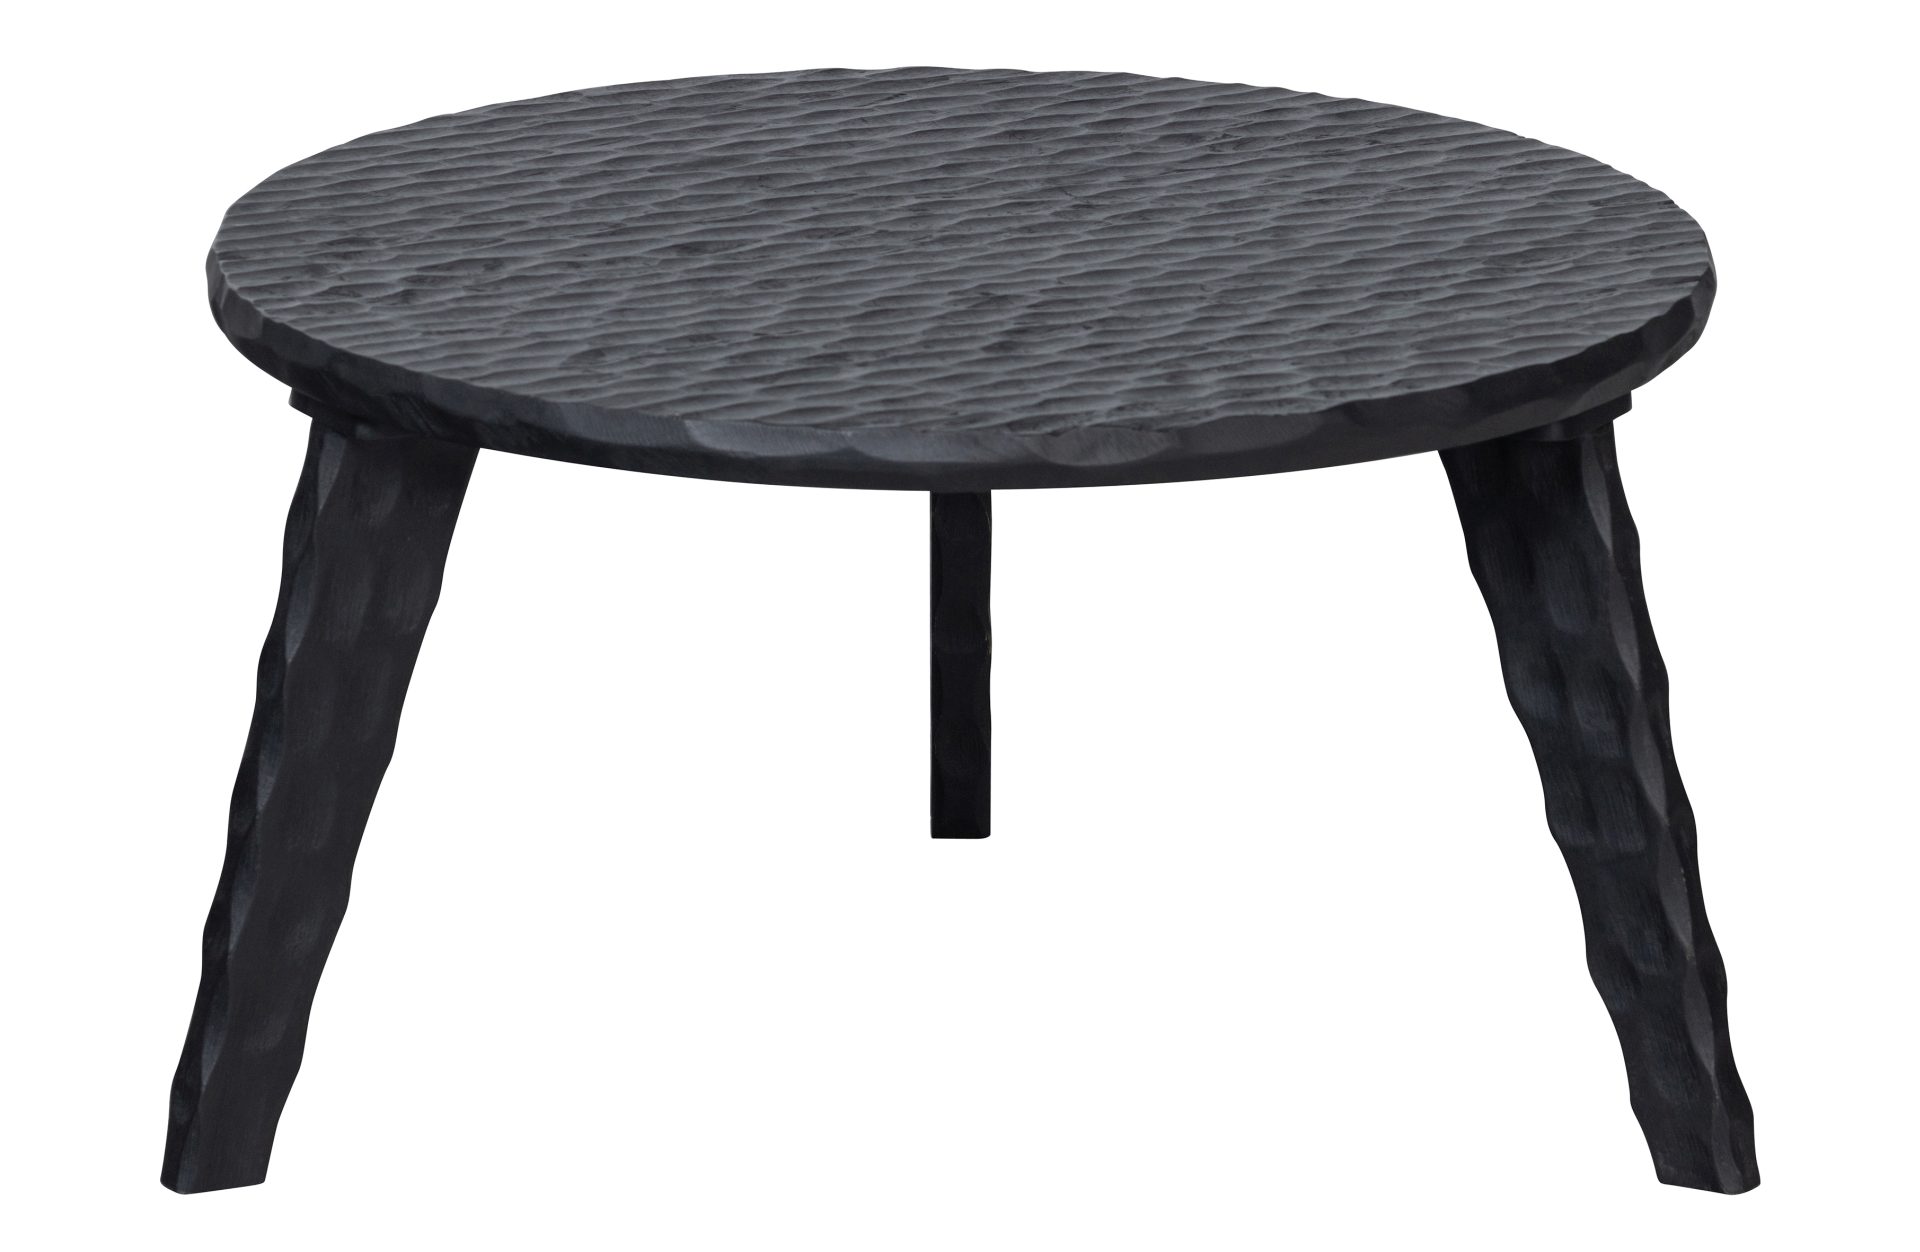 Der Beistelltisch Moises überzeugt mit seinem modernem aber auch klassischem Design. Gefertigt wurde der Tisch aus Mangoholz, welcher einen schwarzen Farbton besitzt.